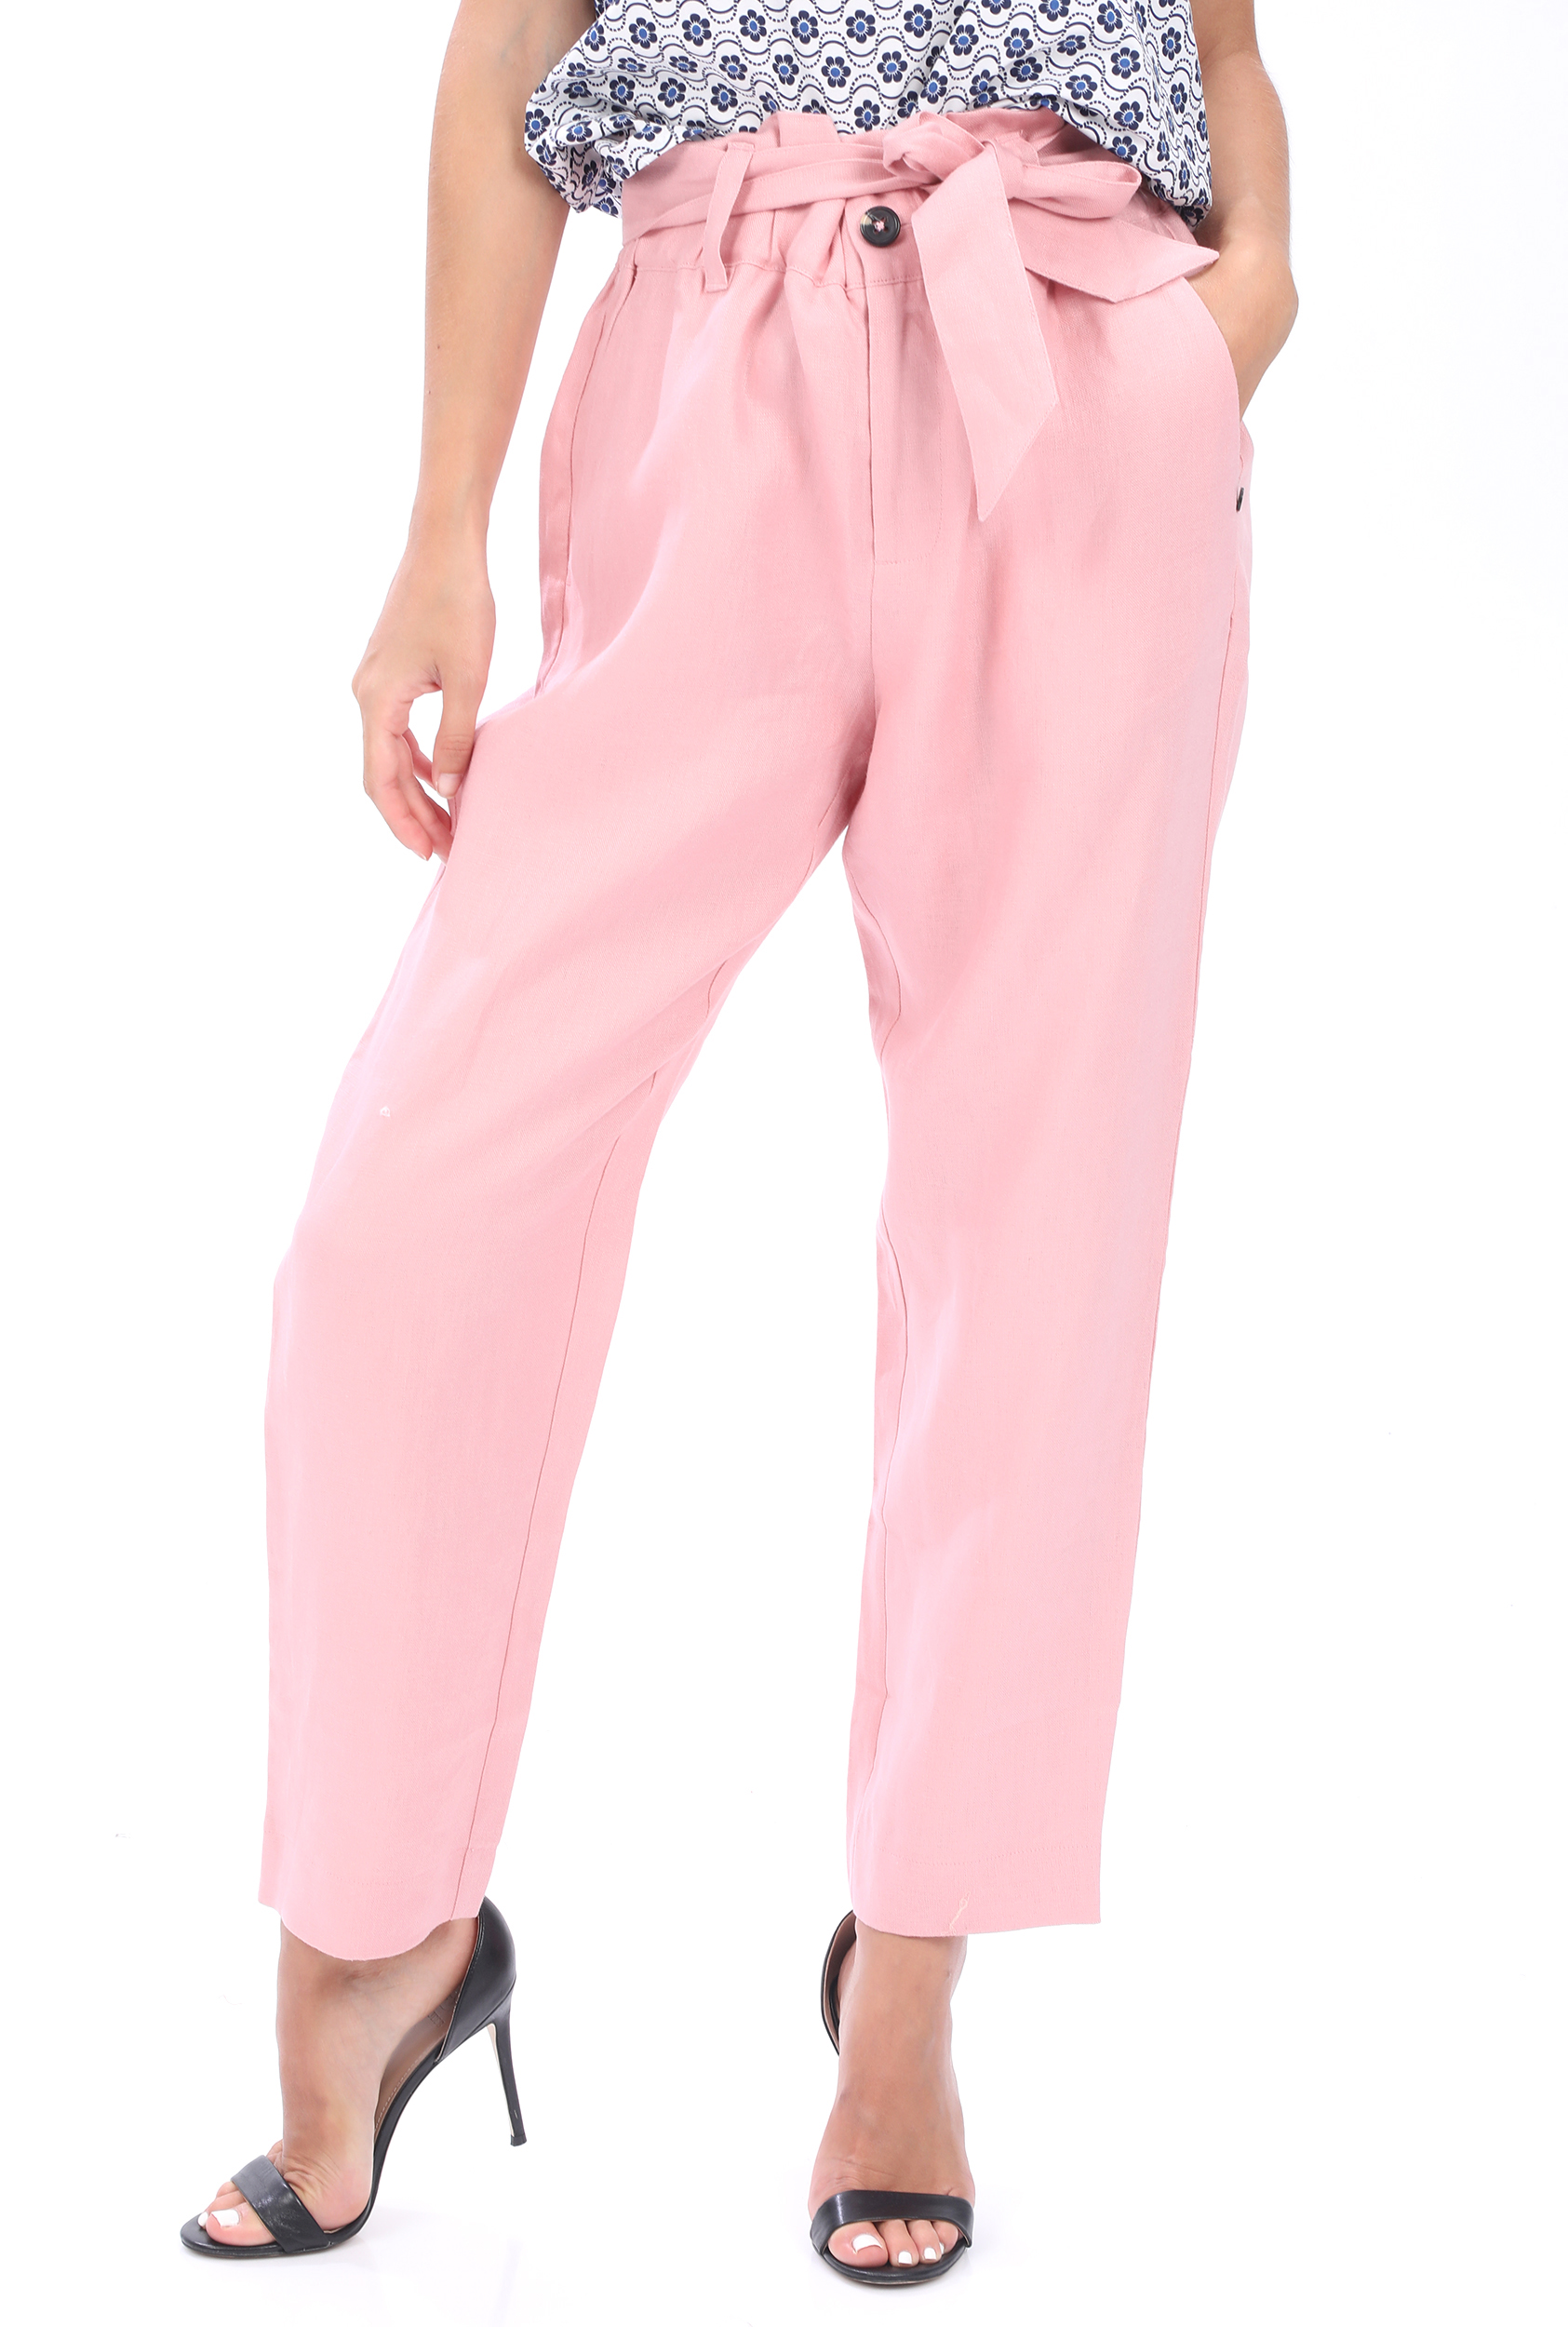 Γυναικεία/Ρούχα/Παντελόνια/Ισια Γραμμή SCOTCH & SODA - Γυναικείο λινό παντελόνι SCOTCH & SODA high rise pants tapered ροζ